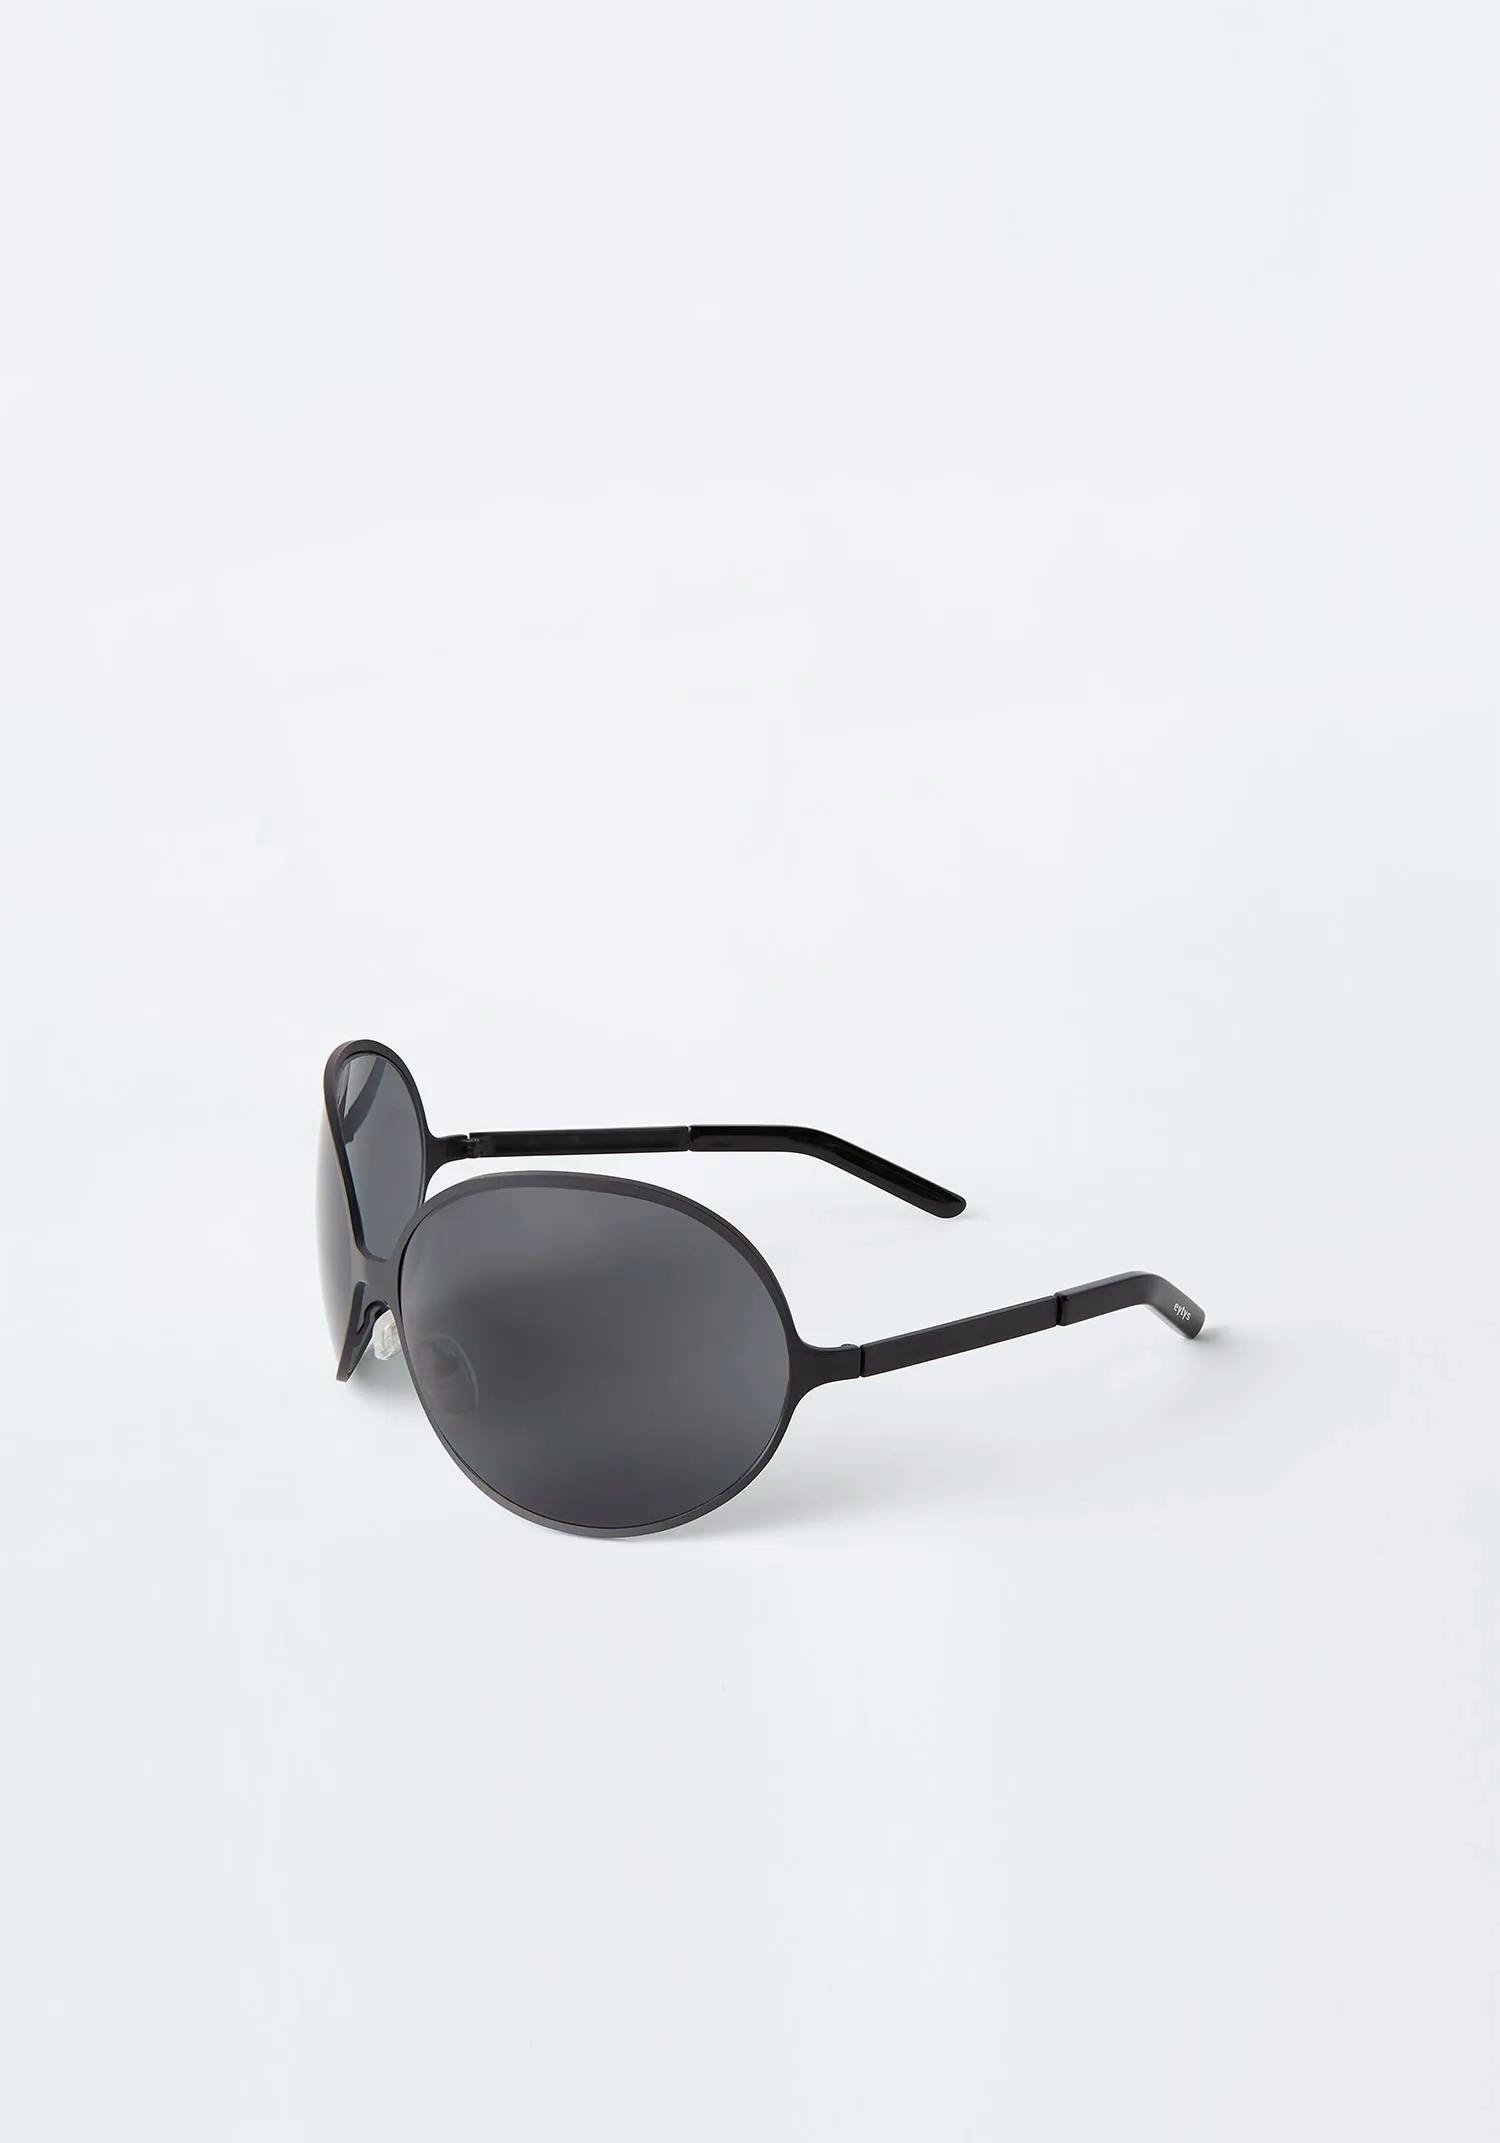 Eytys Beetle Black Sunglasses | EYTYS